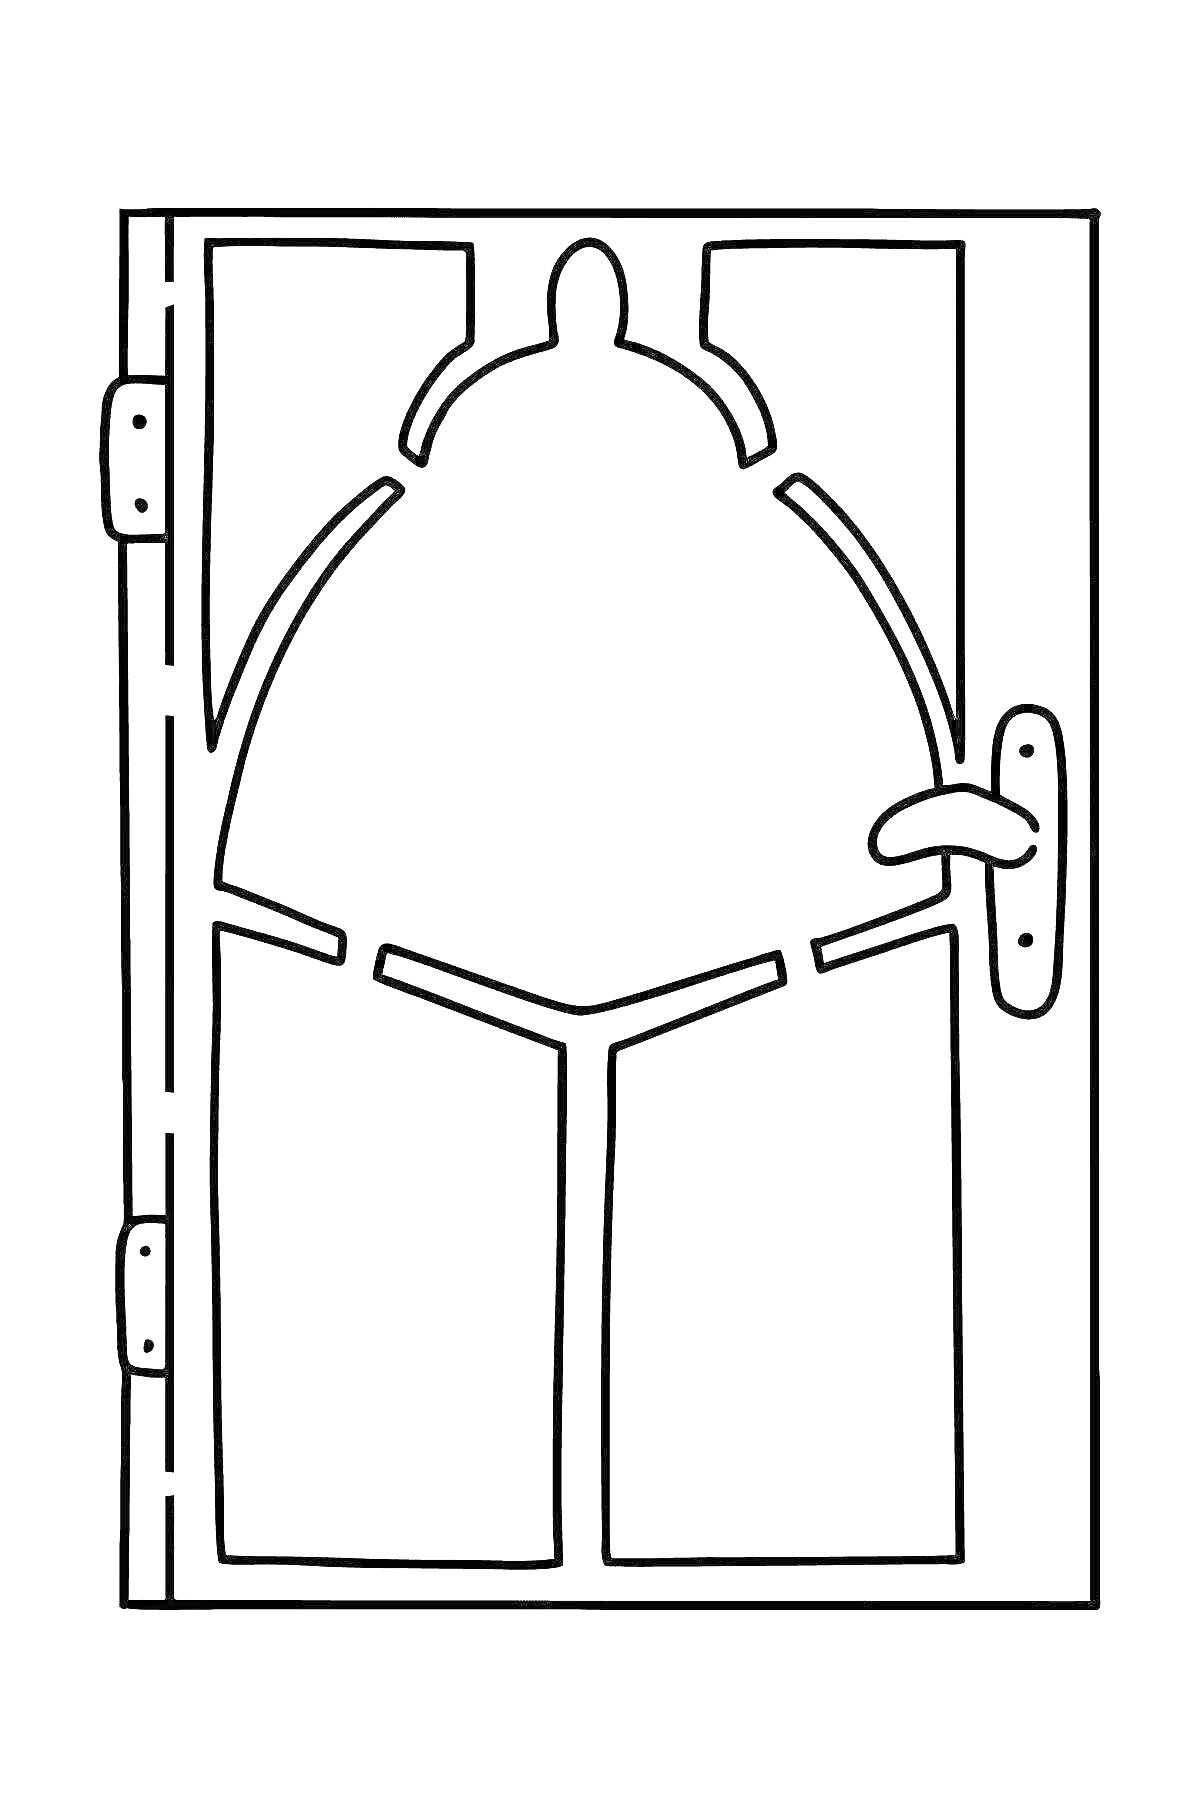 Декоративная дверь с арочной вставкой и ручкой